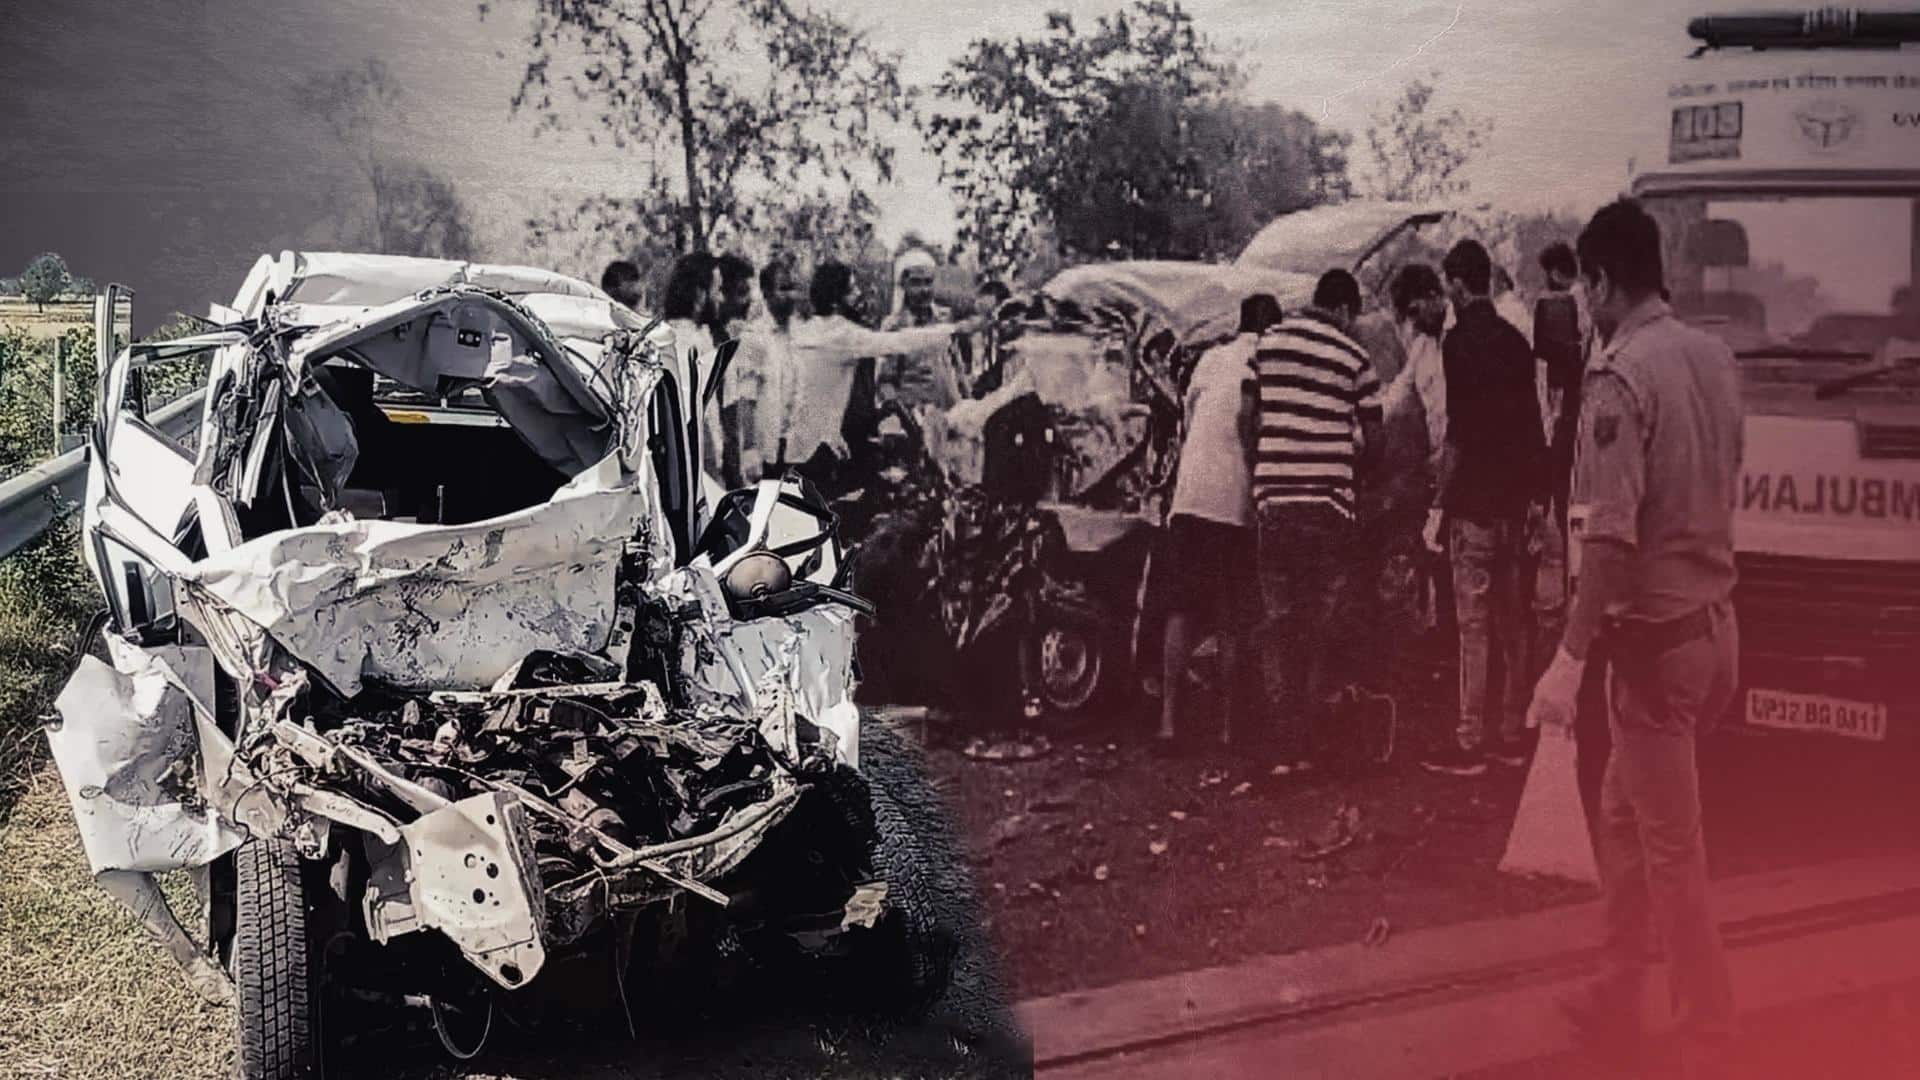 10 die in 2 separate road mishaps in Karnataka, UP